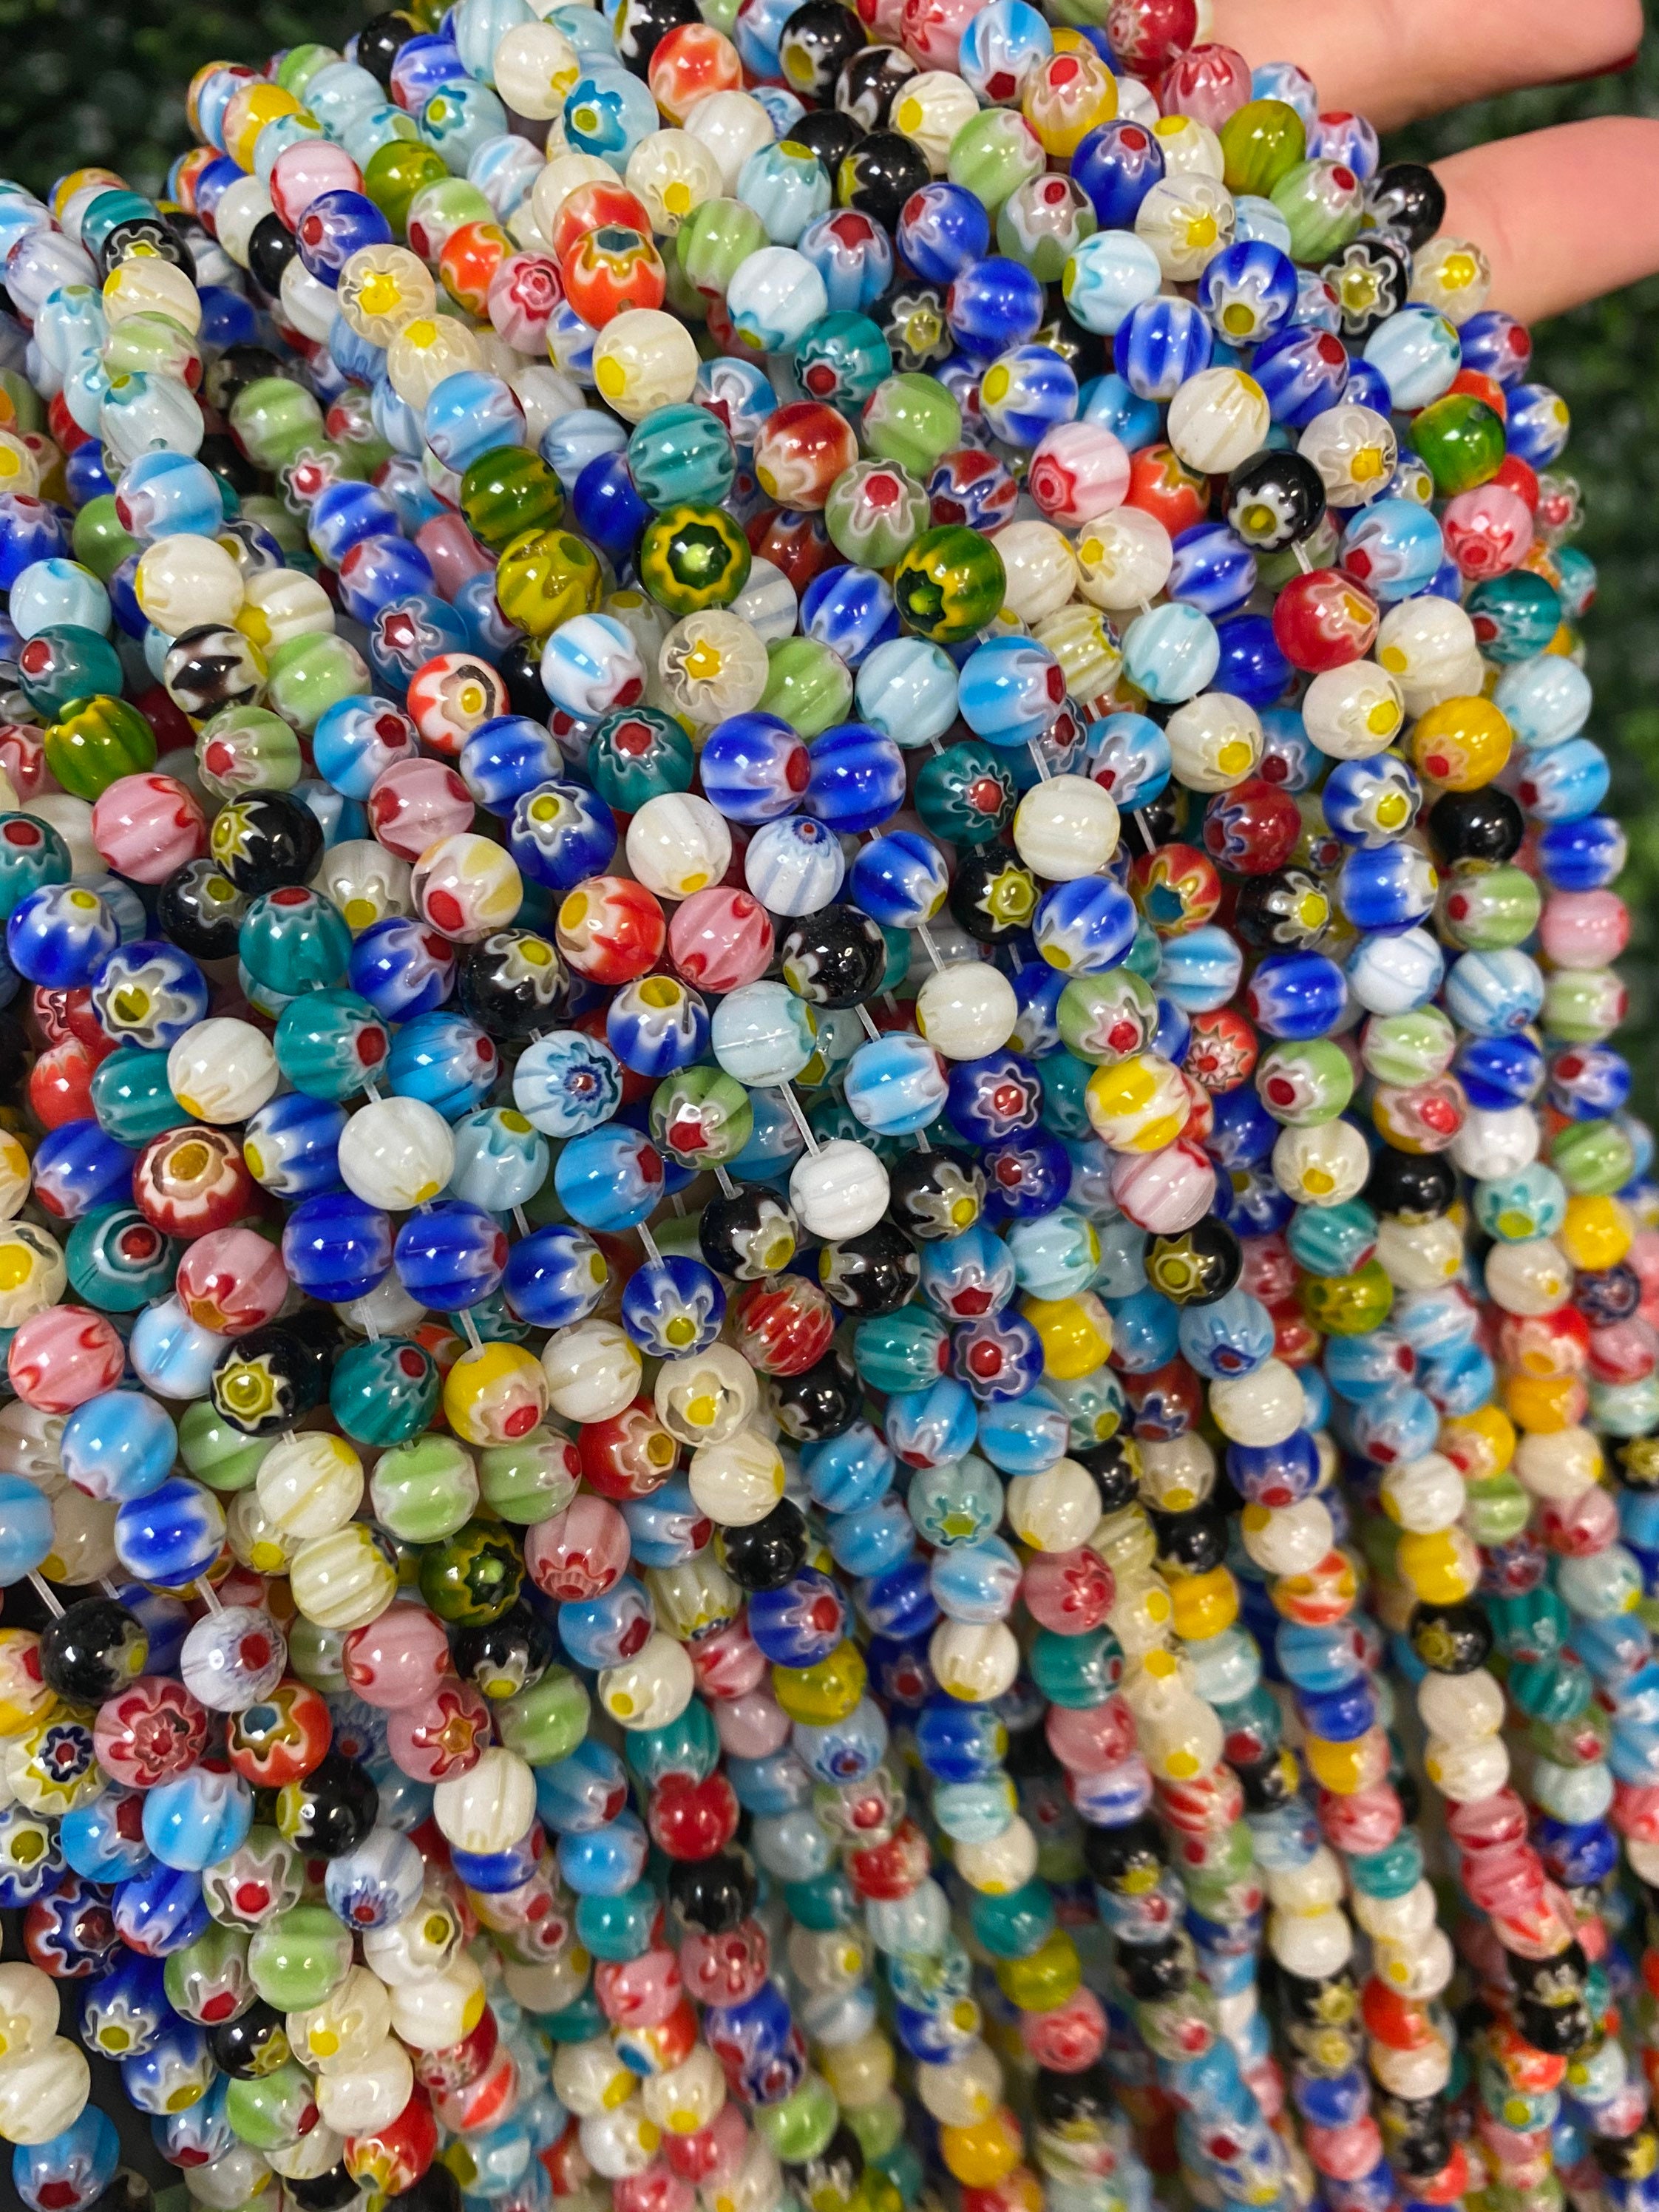 Murano Style Millefiori Round Beads,6mm Flower Glass Beads,8mm Millefiori  Beads,colorful Bulk Beads for Jewelry Making,4mm Millefiori Beads 